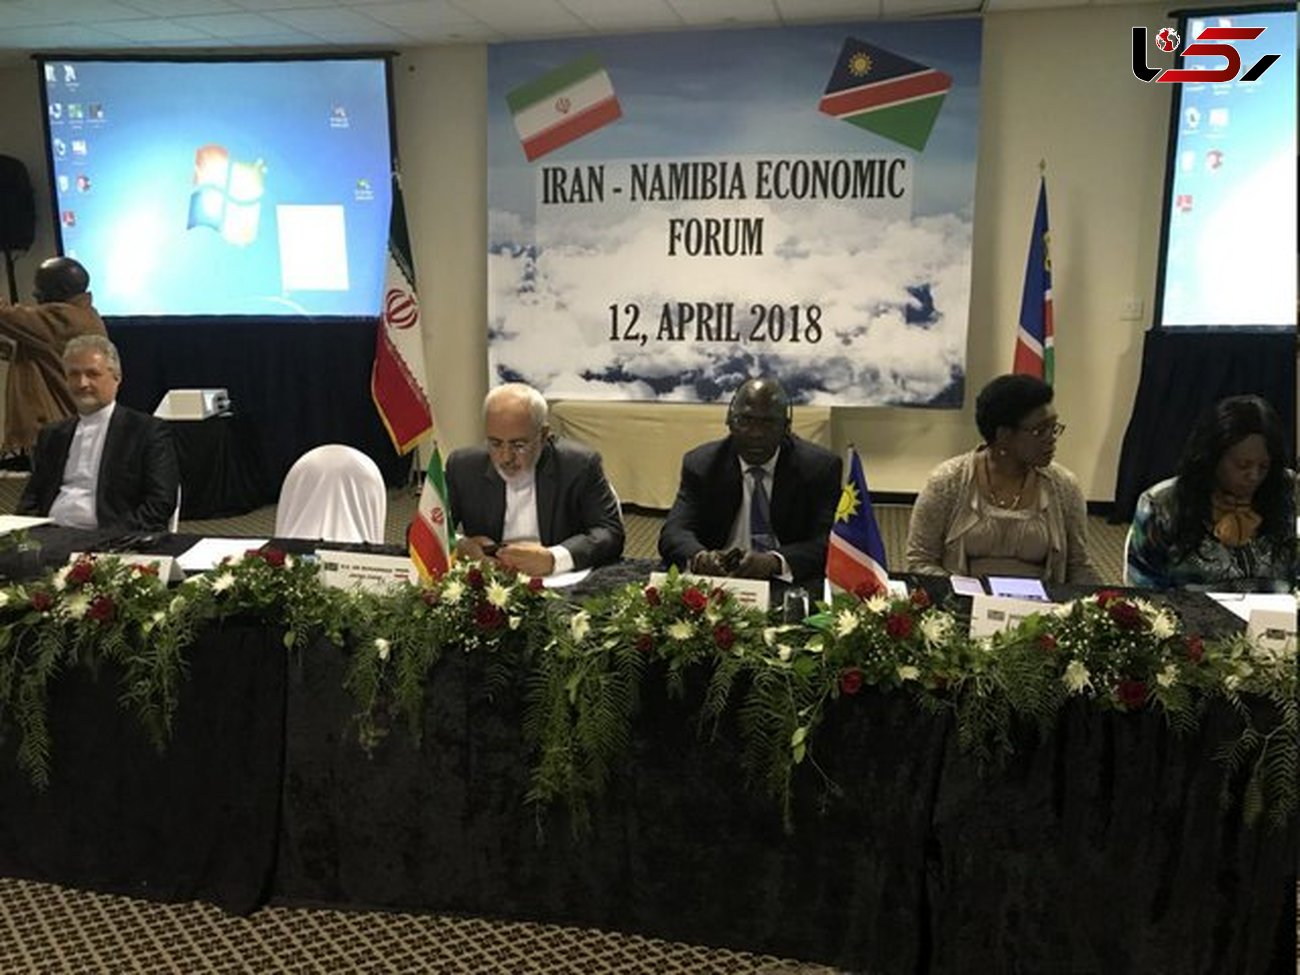 برگزاری همایش اقتصادی مشترک ایران و نامیبیا با حضور ظریف